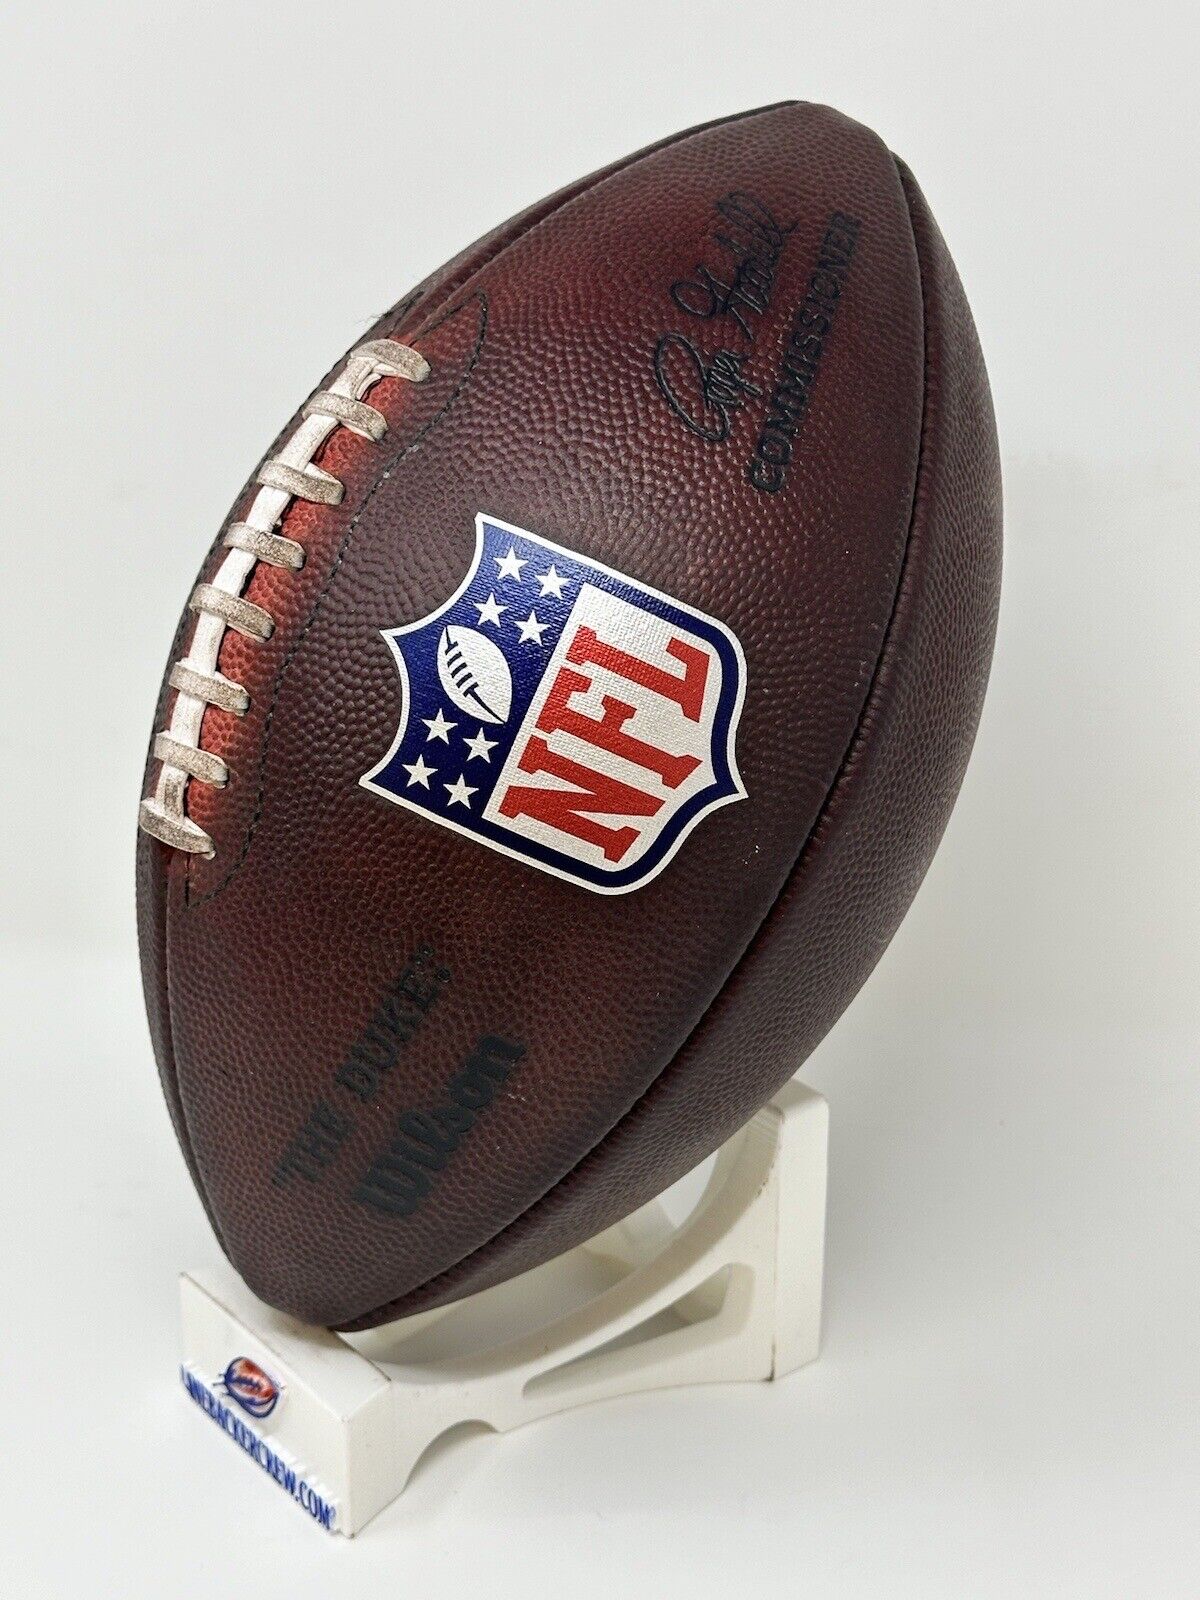 Duke Footballs Game Wilson LLC NFL Fully Prepped Football LBC – The